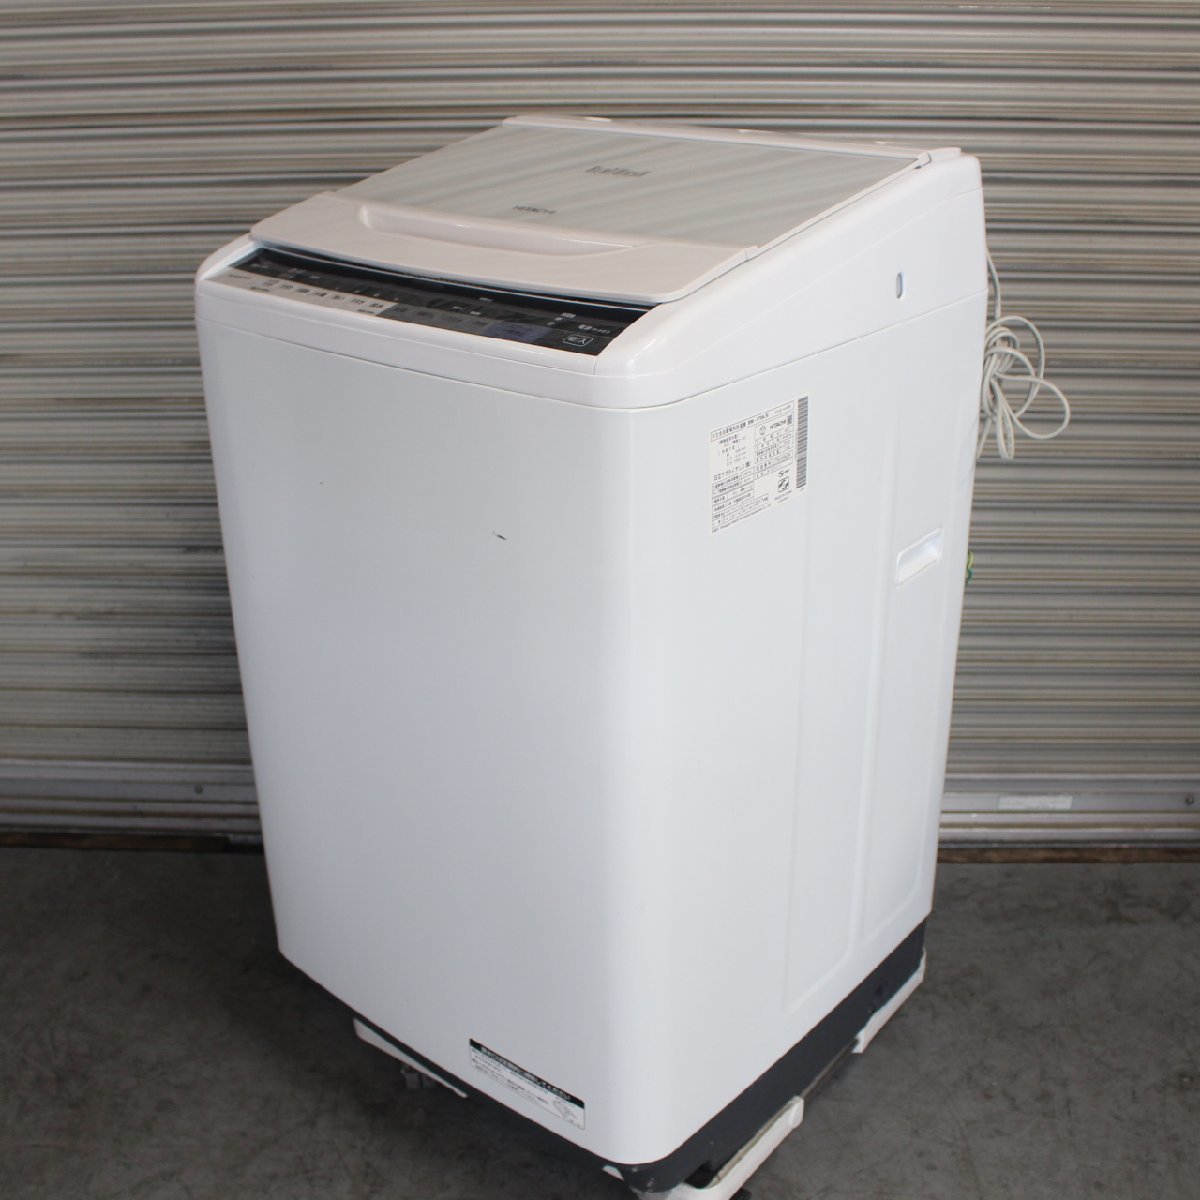 東京都新宿区にて 日立 全自動洗濯機 BW-V70A 2017年製 を出張買取させて頂きました。